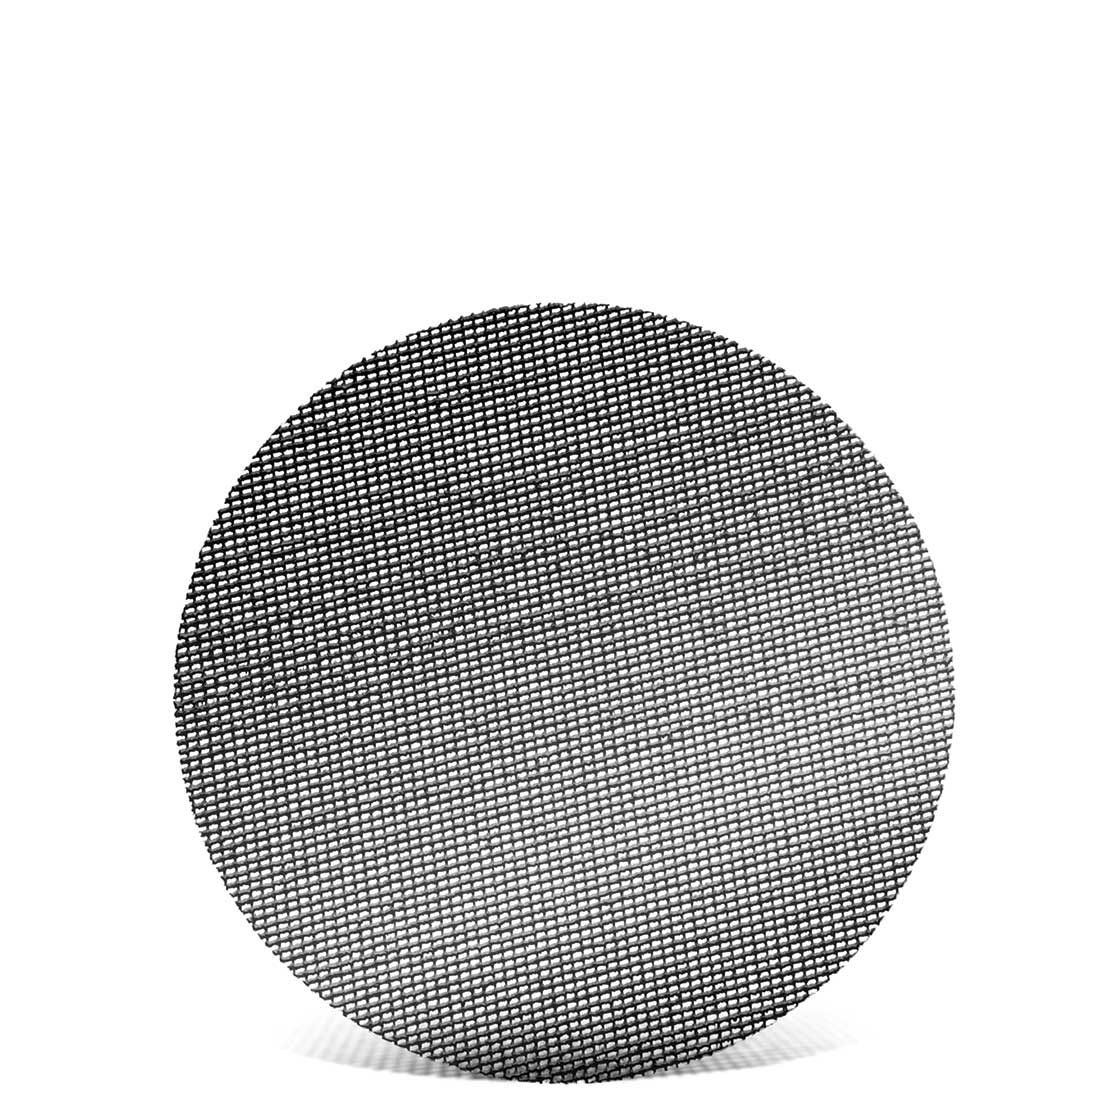 MENZER Klett-Schleifgitter für Exzenterschleifer, K60–180, Ø 150 mm / Gitter / Siliciumcarbid